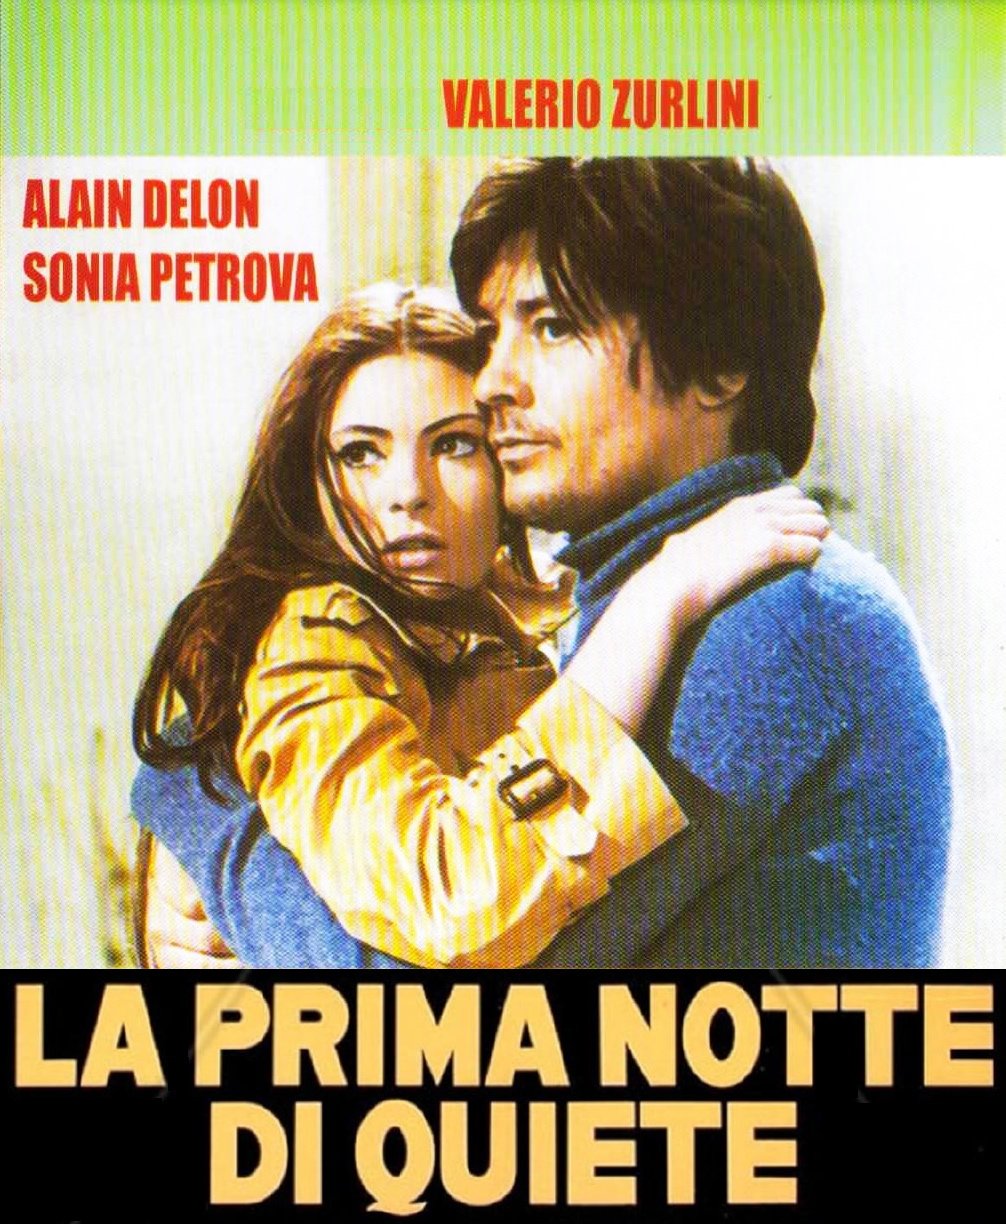 Italian poster of the movie La Prima notte di quiete